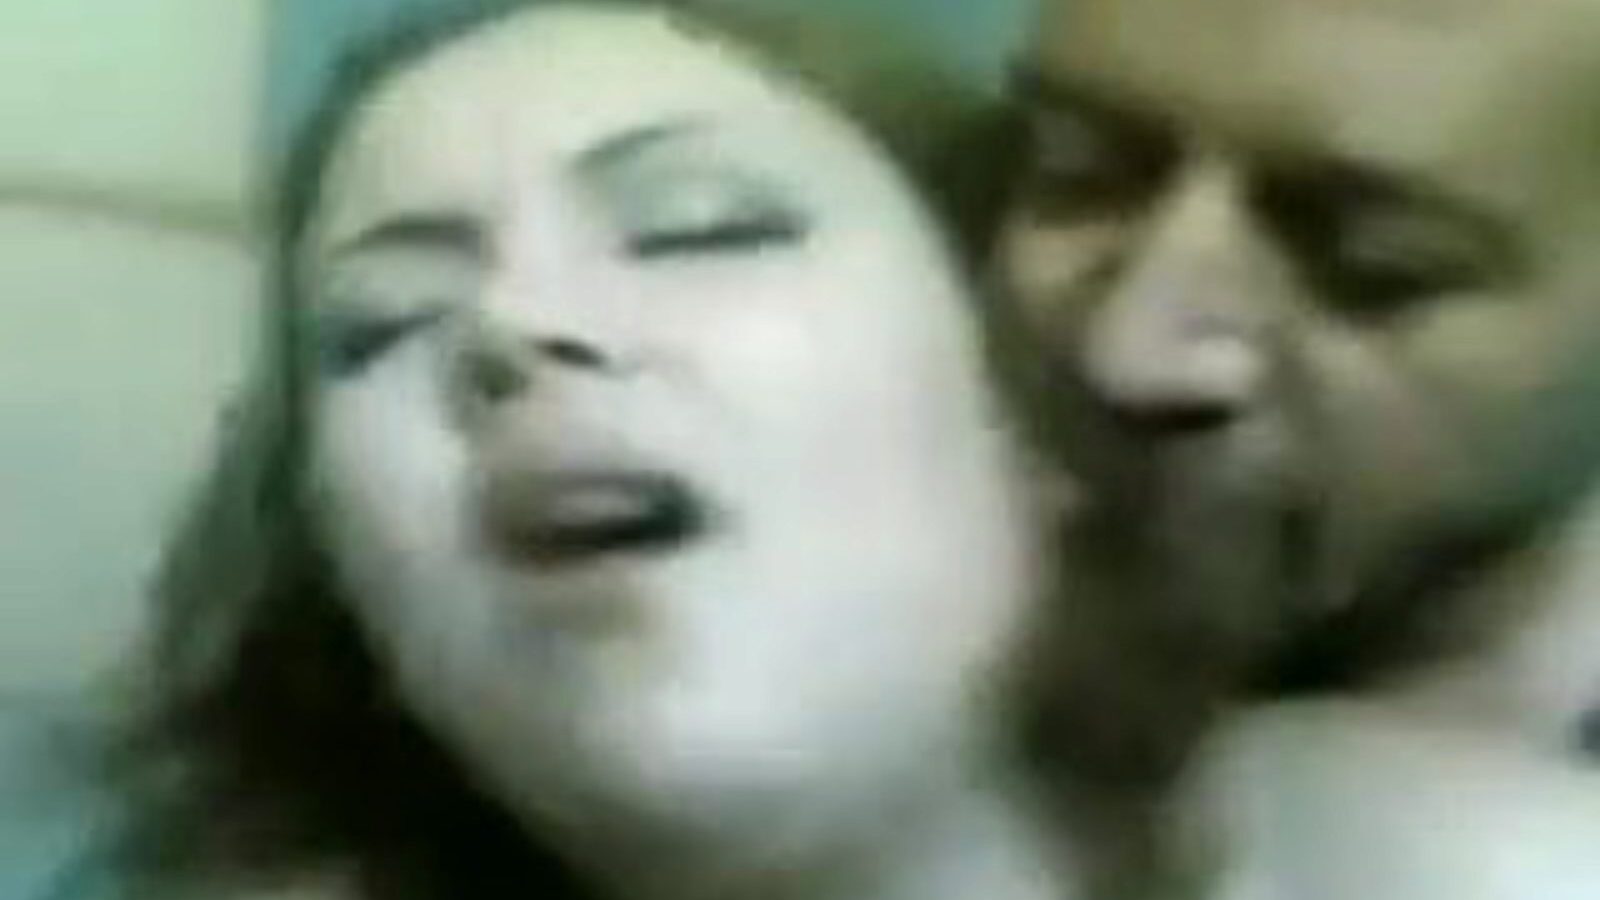 madame lily: gratuit soixante-neuf vidéo porno 07 - xhamster regardez le clip de sexe de madame lily tube gratuitement pour tous sur xhamster, avec la bande supérieure des épisodes vidéo porno arabe égyptien, 69 et gros cul